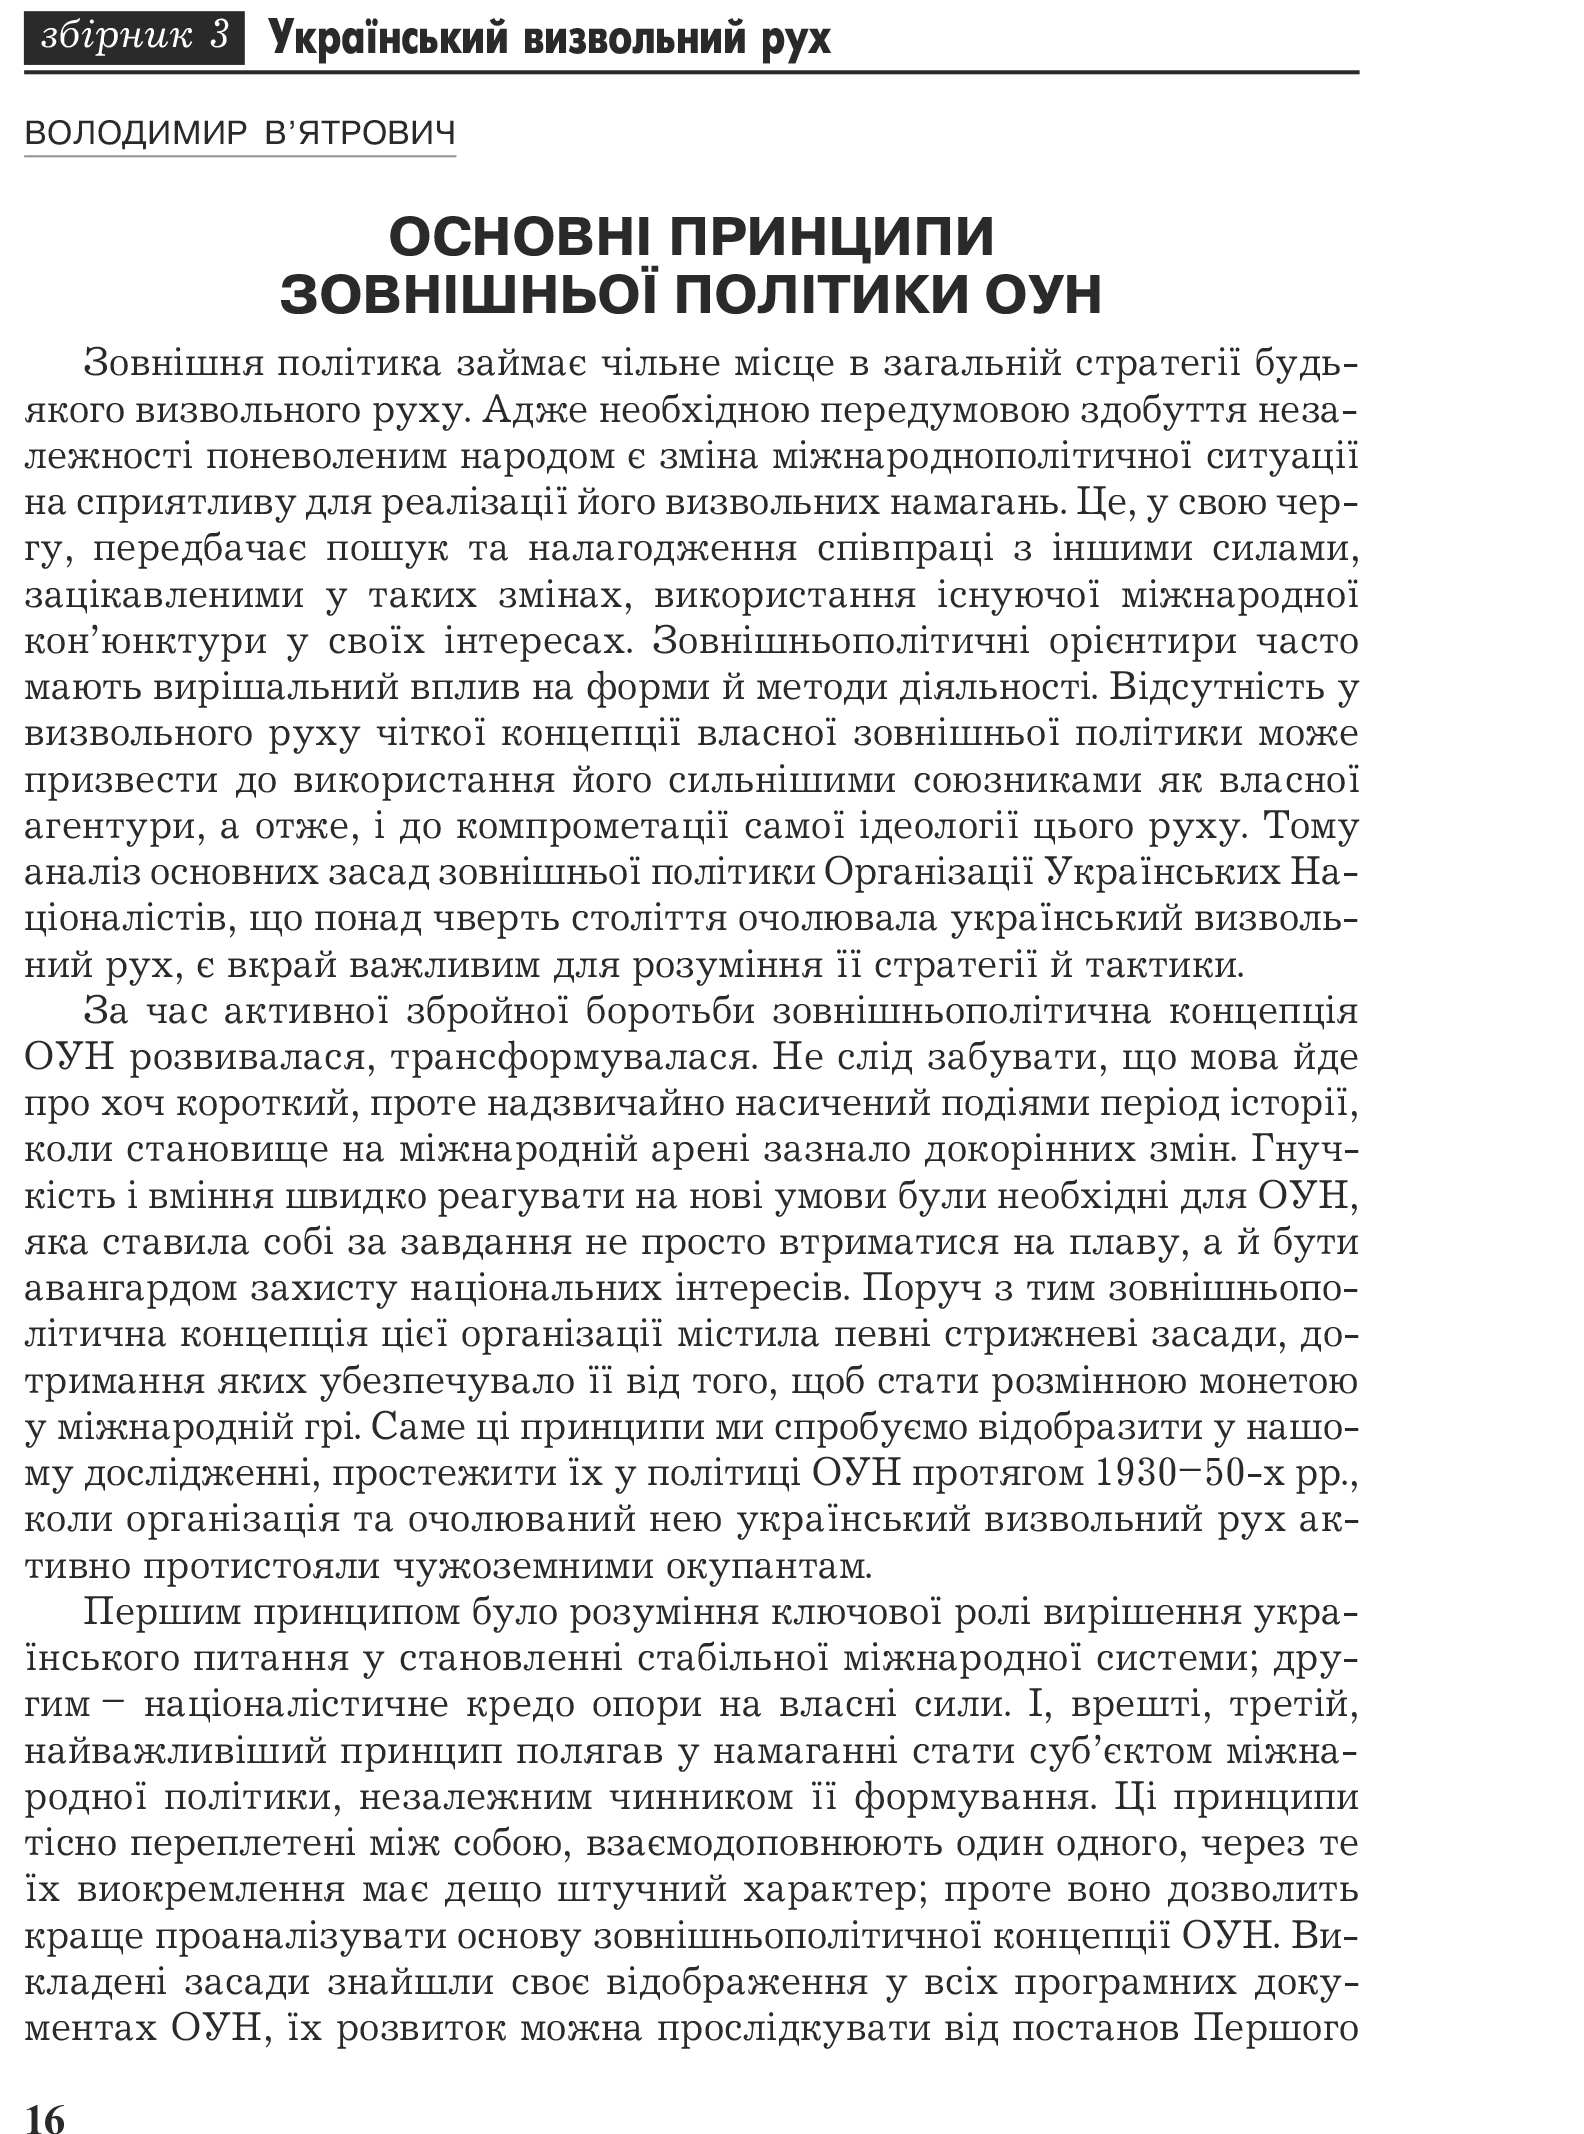 Український визвольний рух №3, ст. 16 - 29